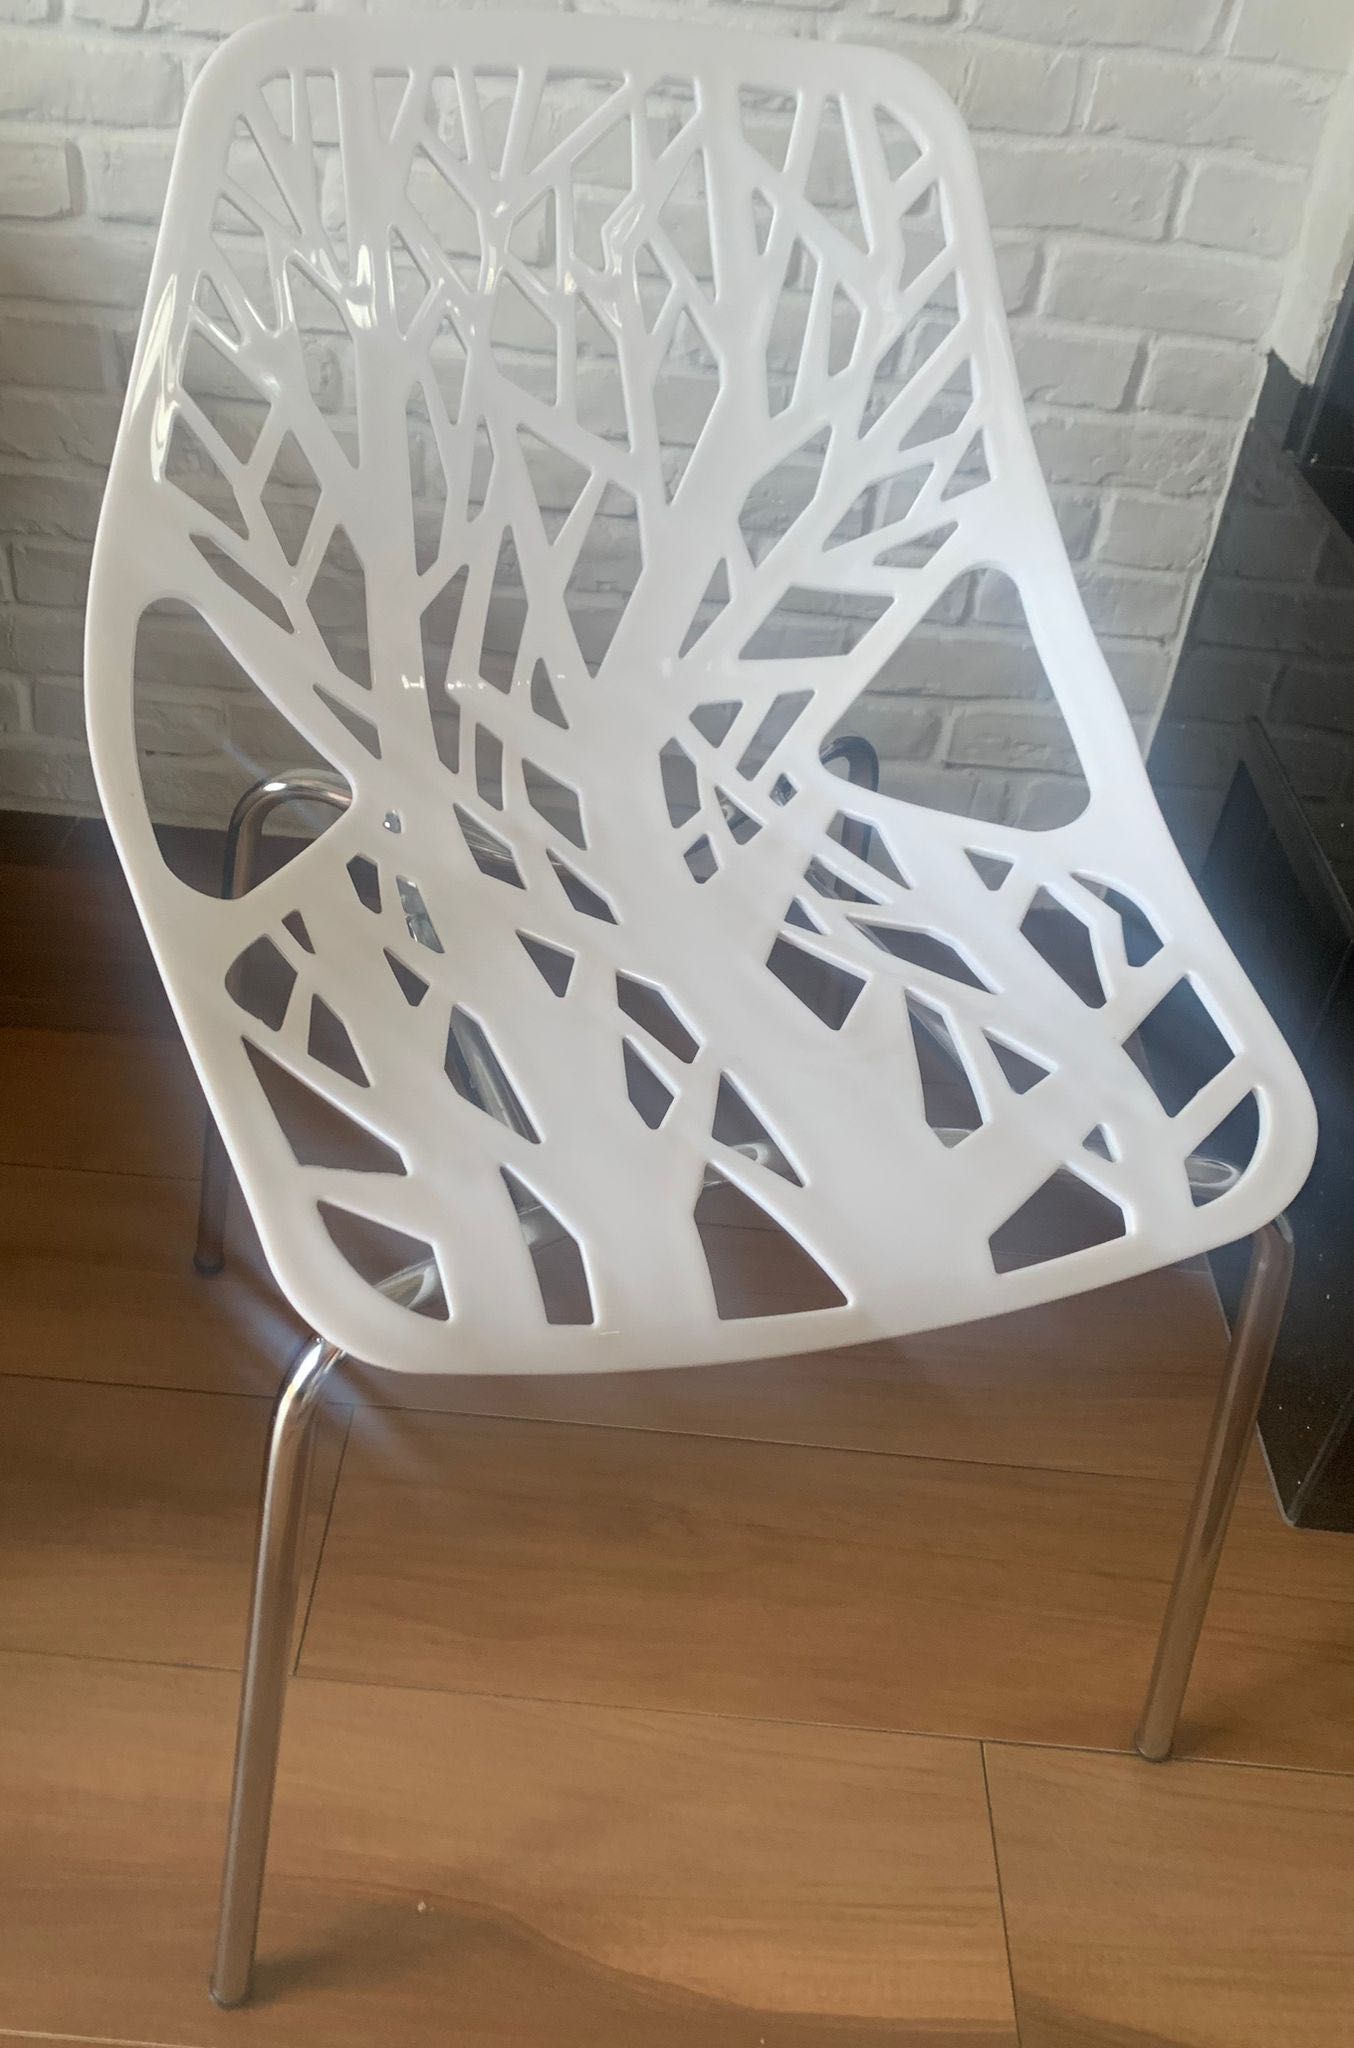 Krzesło z ażurowym siedziskiem białe